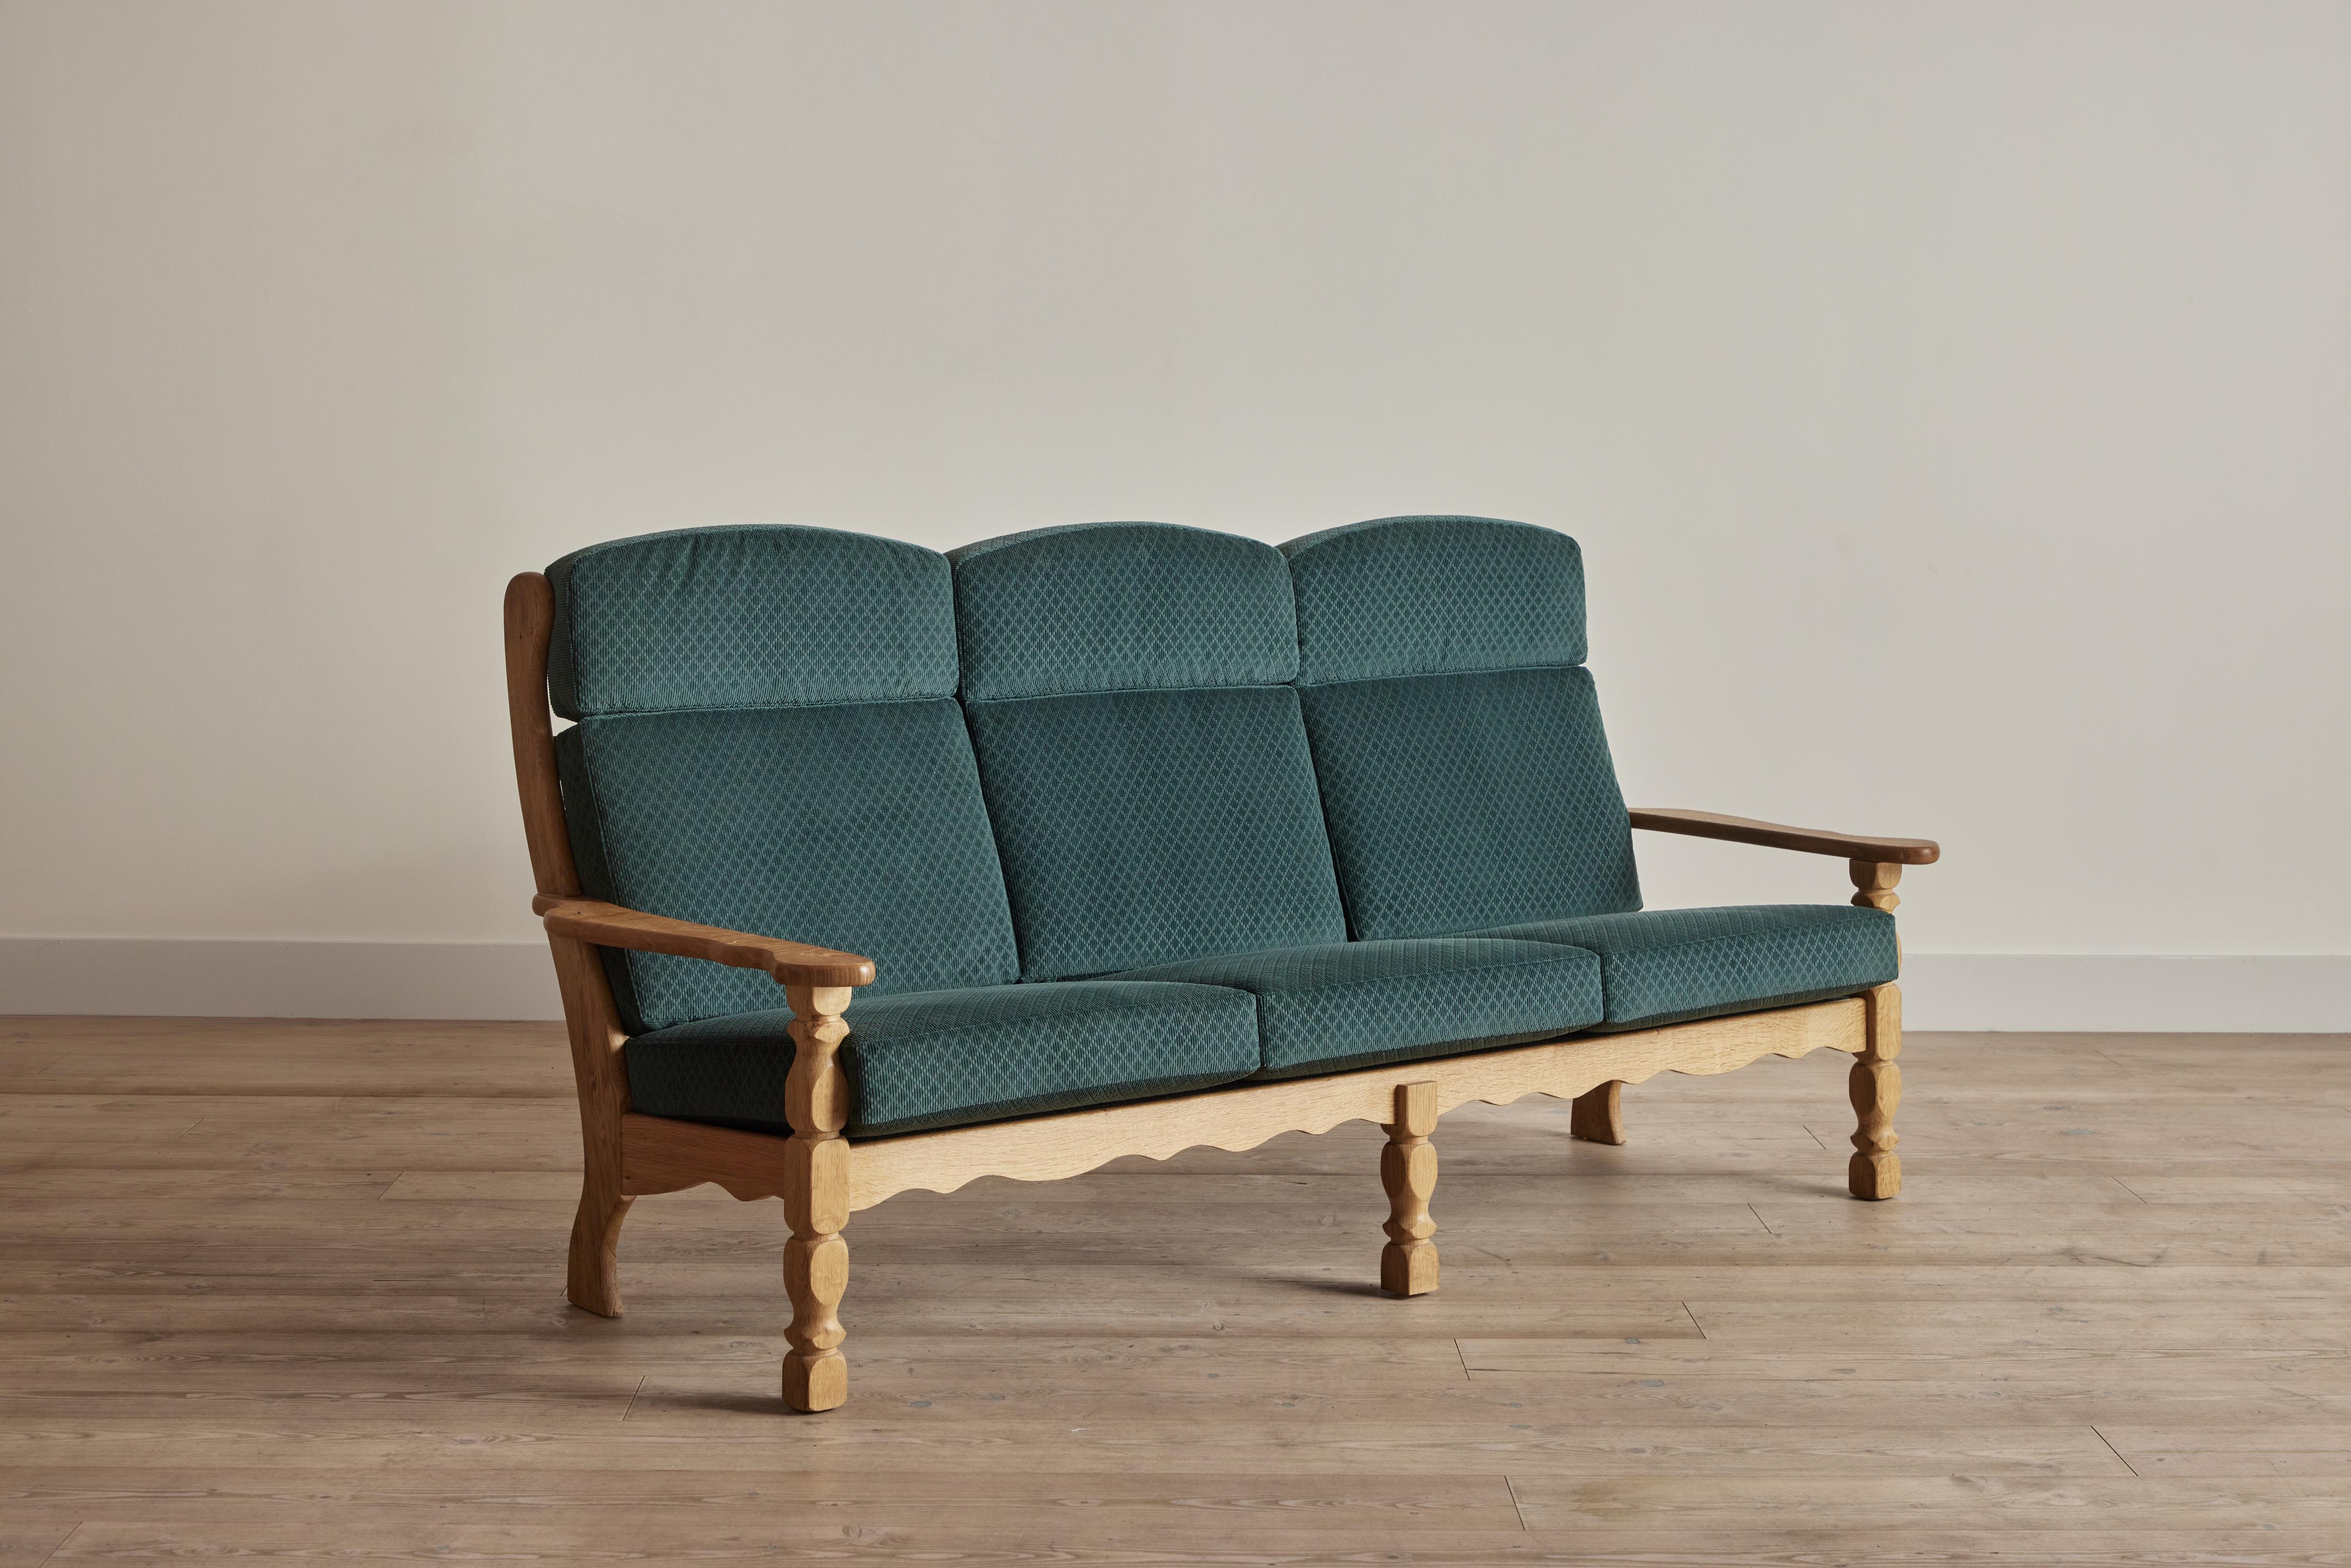 Geschnitztes Sofa aus Eichenholz, das dem dänischen Designer Henning Kjaernulf zugeschrieben wird. Dieses Sofa aus den 1960er Jahren wurde mit dem Clarence-Stoff von George Spencer in Twilight neu gepolstert. Der Holzrahmen wurde gereinigt und